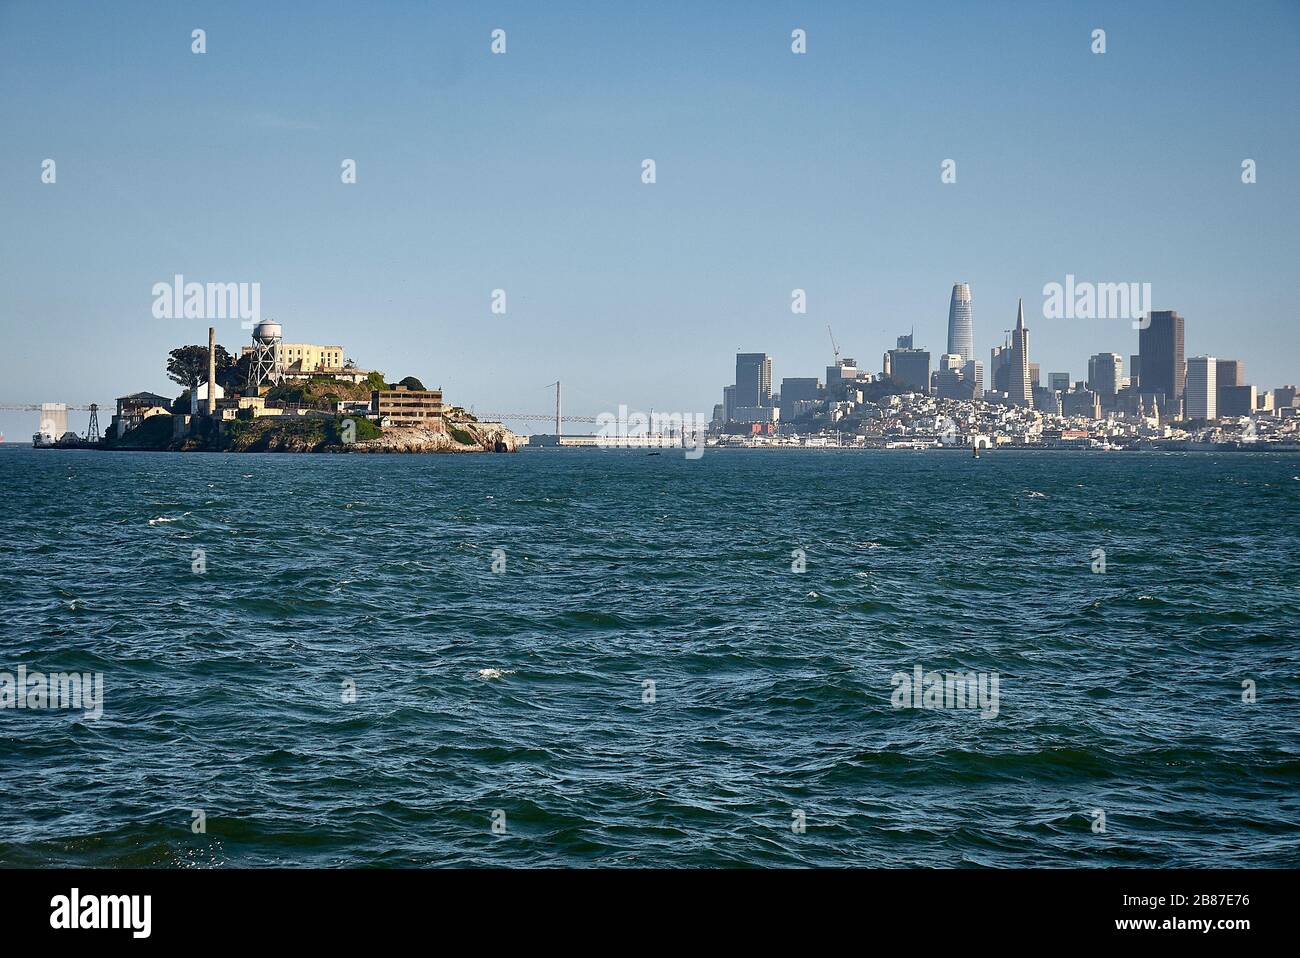 La prigione dell'isola di Alcatraz di fronte allo skyline di San Francisco. Foto Stock